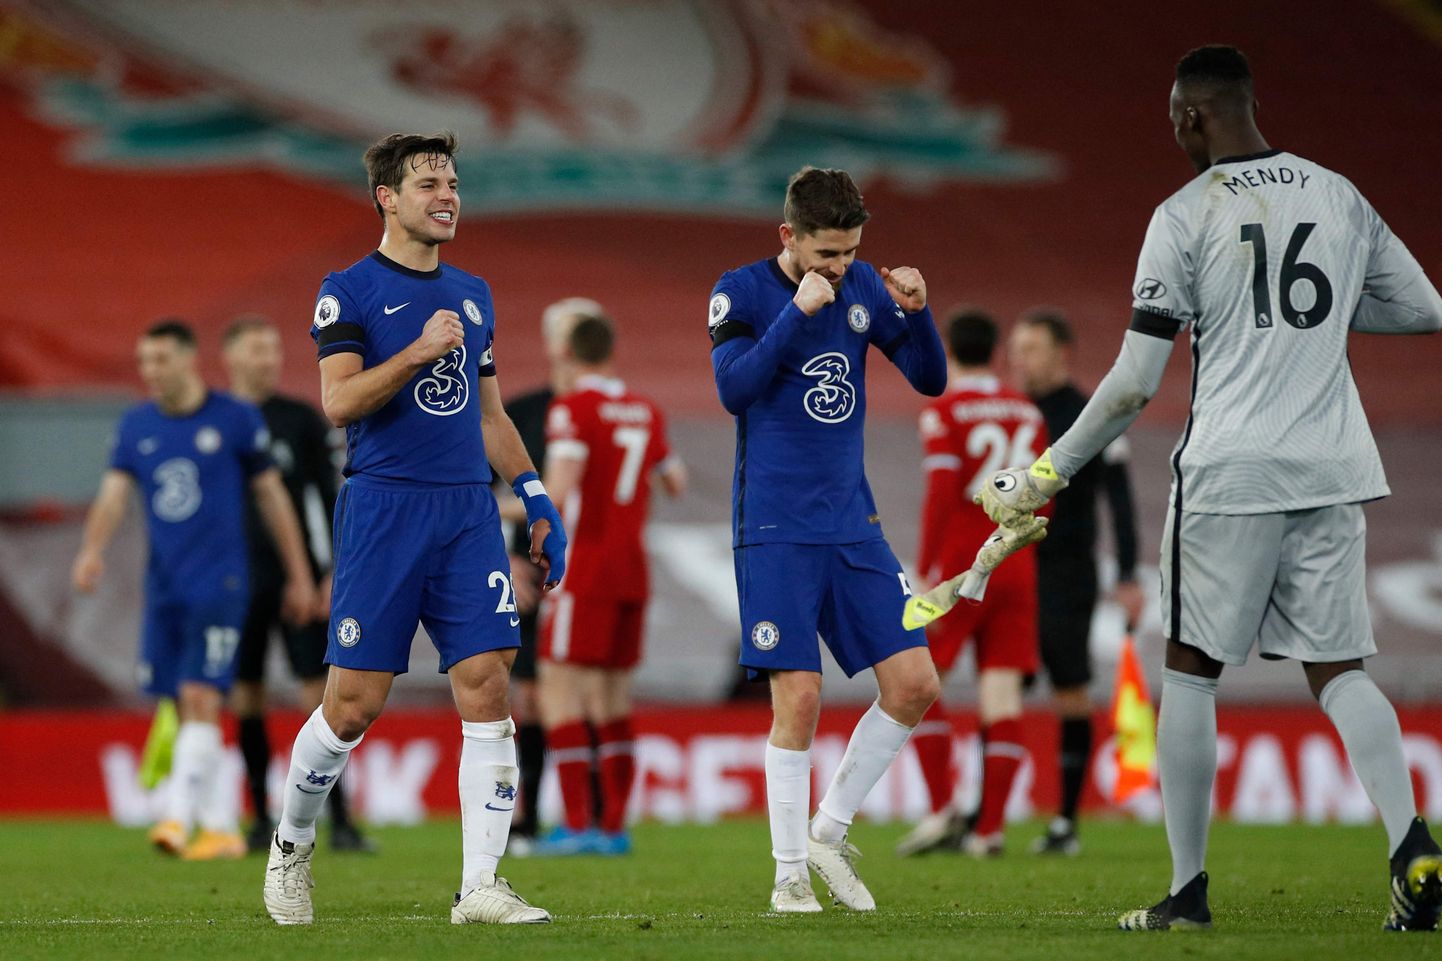 Chelsea mängijad tähistamas võitu Liverpooli üle.